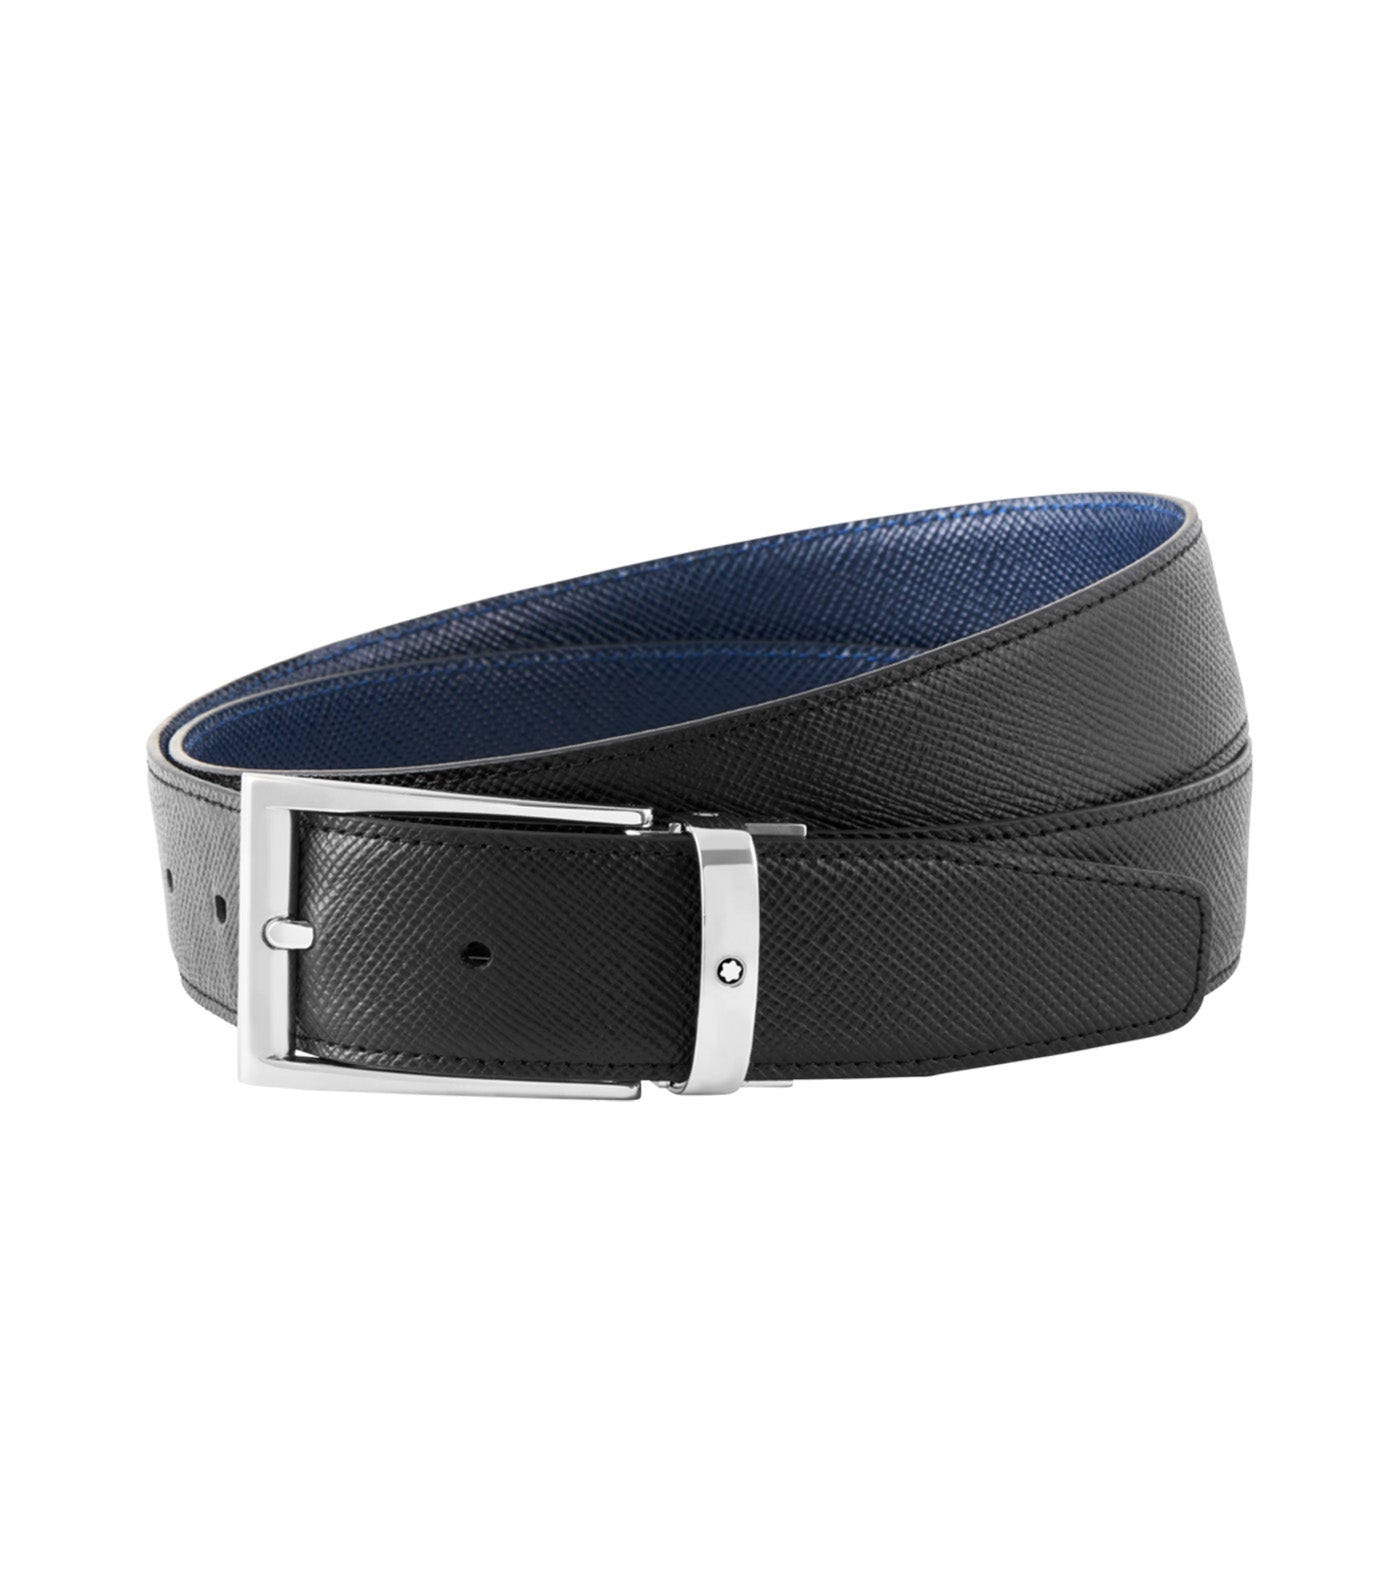 35mm Reversible Leather Belt Black/Blue